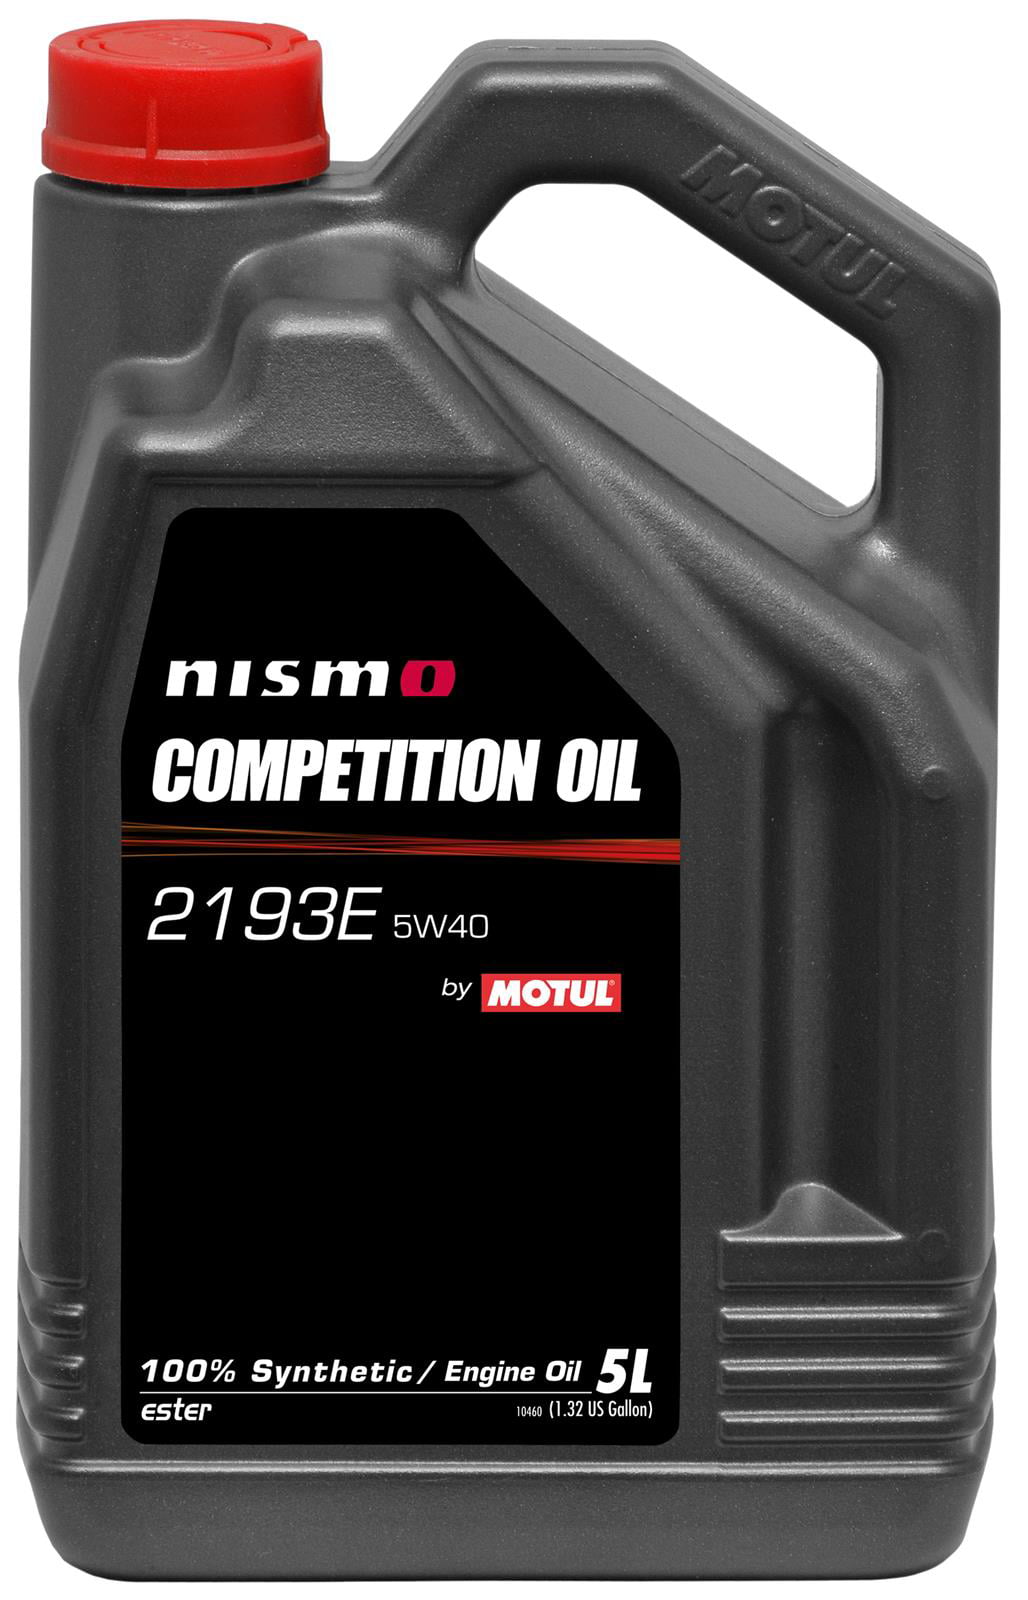 Motul NISMO Competition Oil 2193E 5W40 5L 